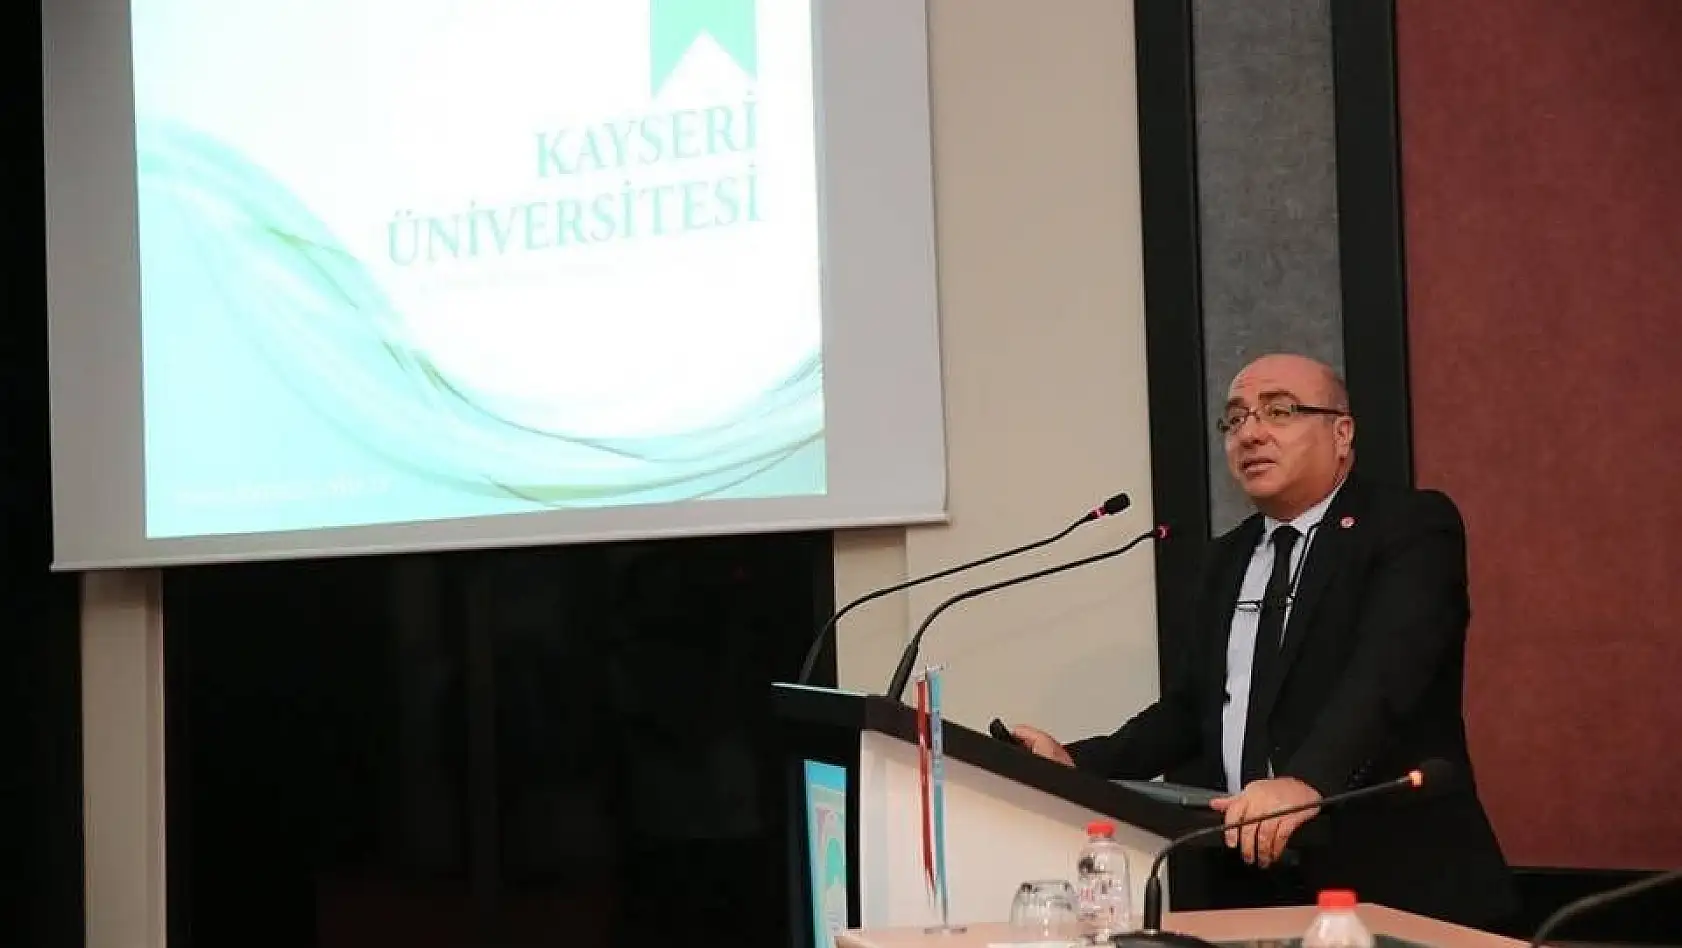 Kayseri Üniversitesi Melikgazi Belediye Meclisinde tanıtıldı
